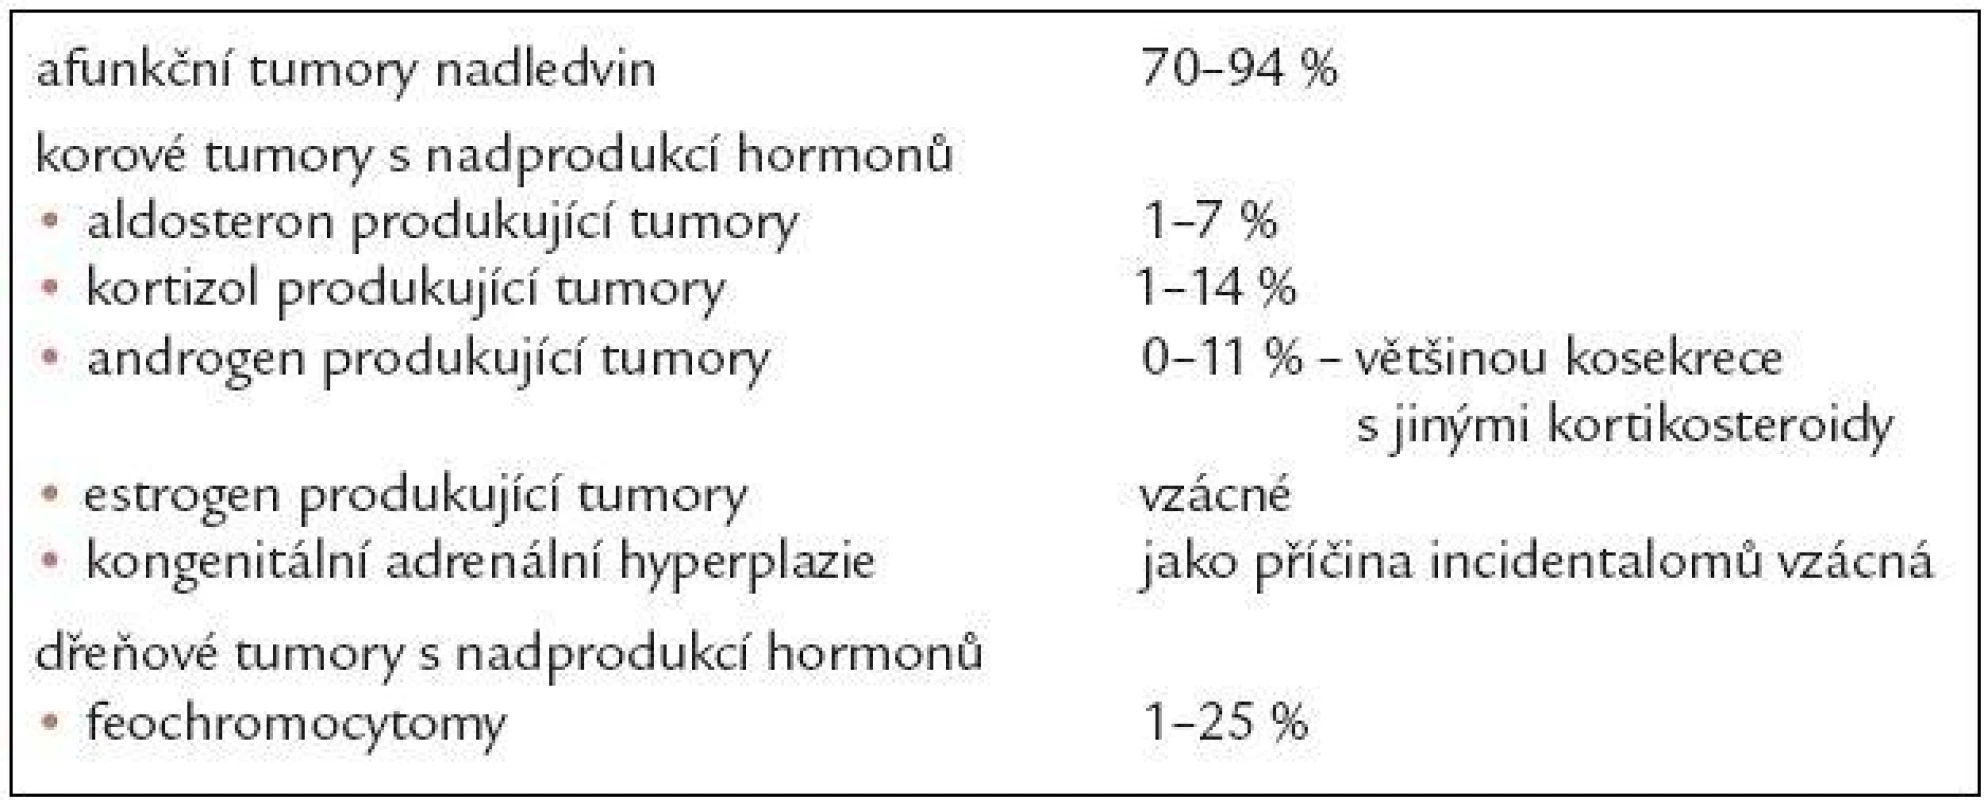 Rozdělení tumorů nadledvin podle hormonální produkce.